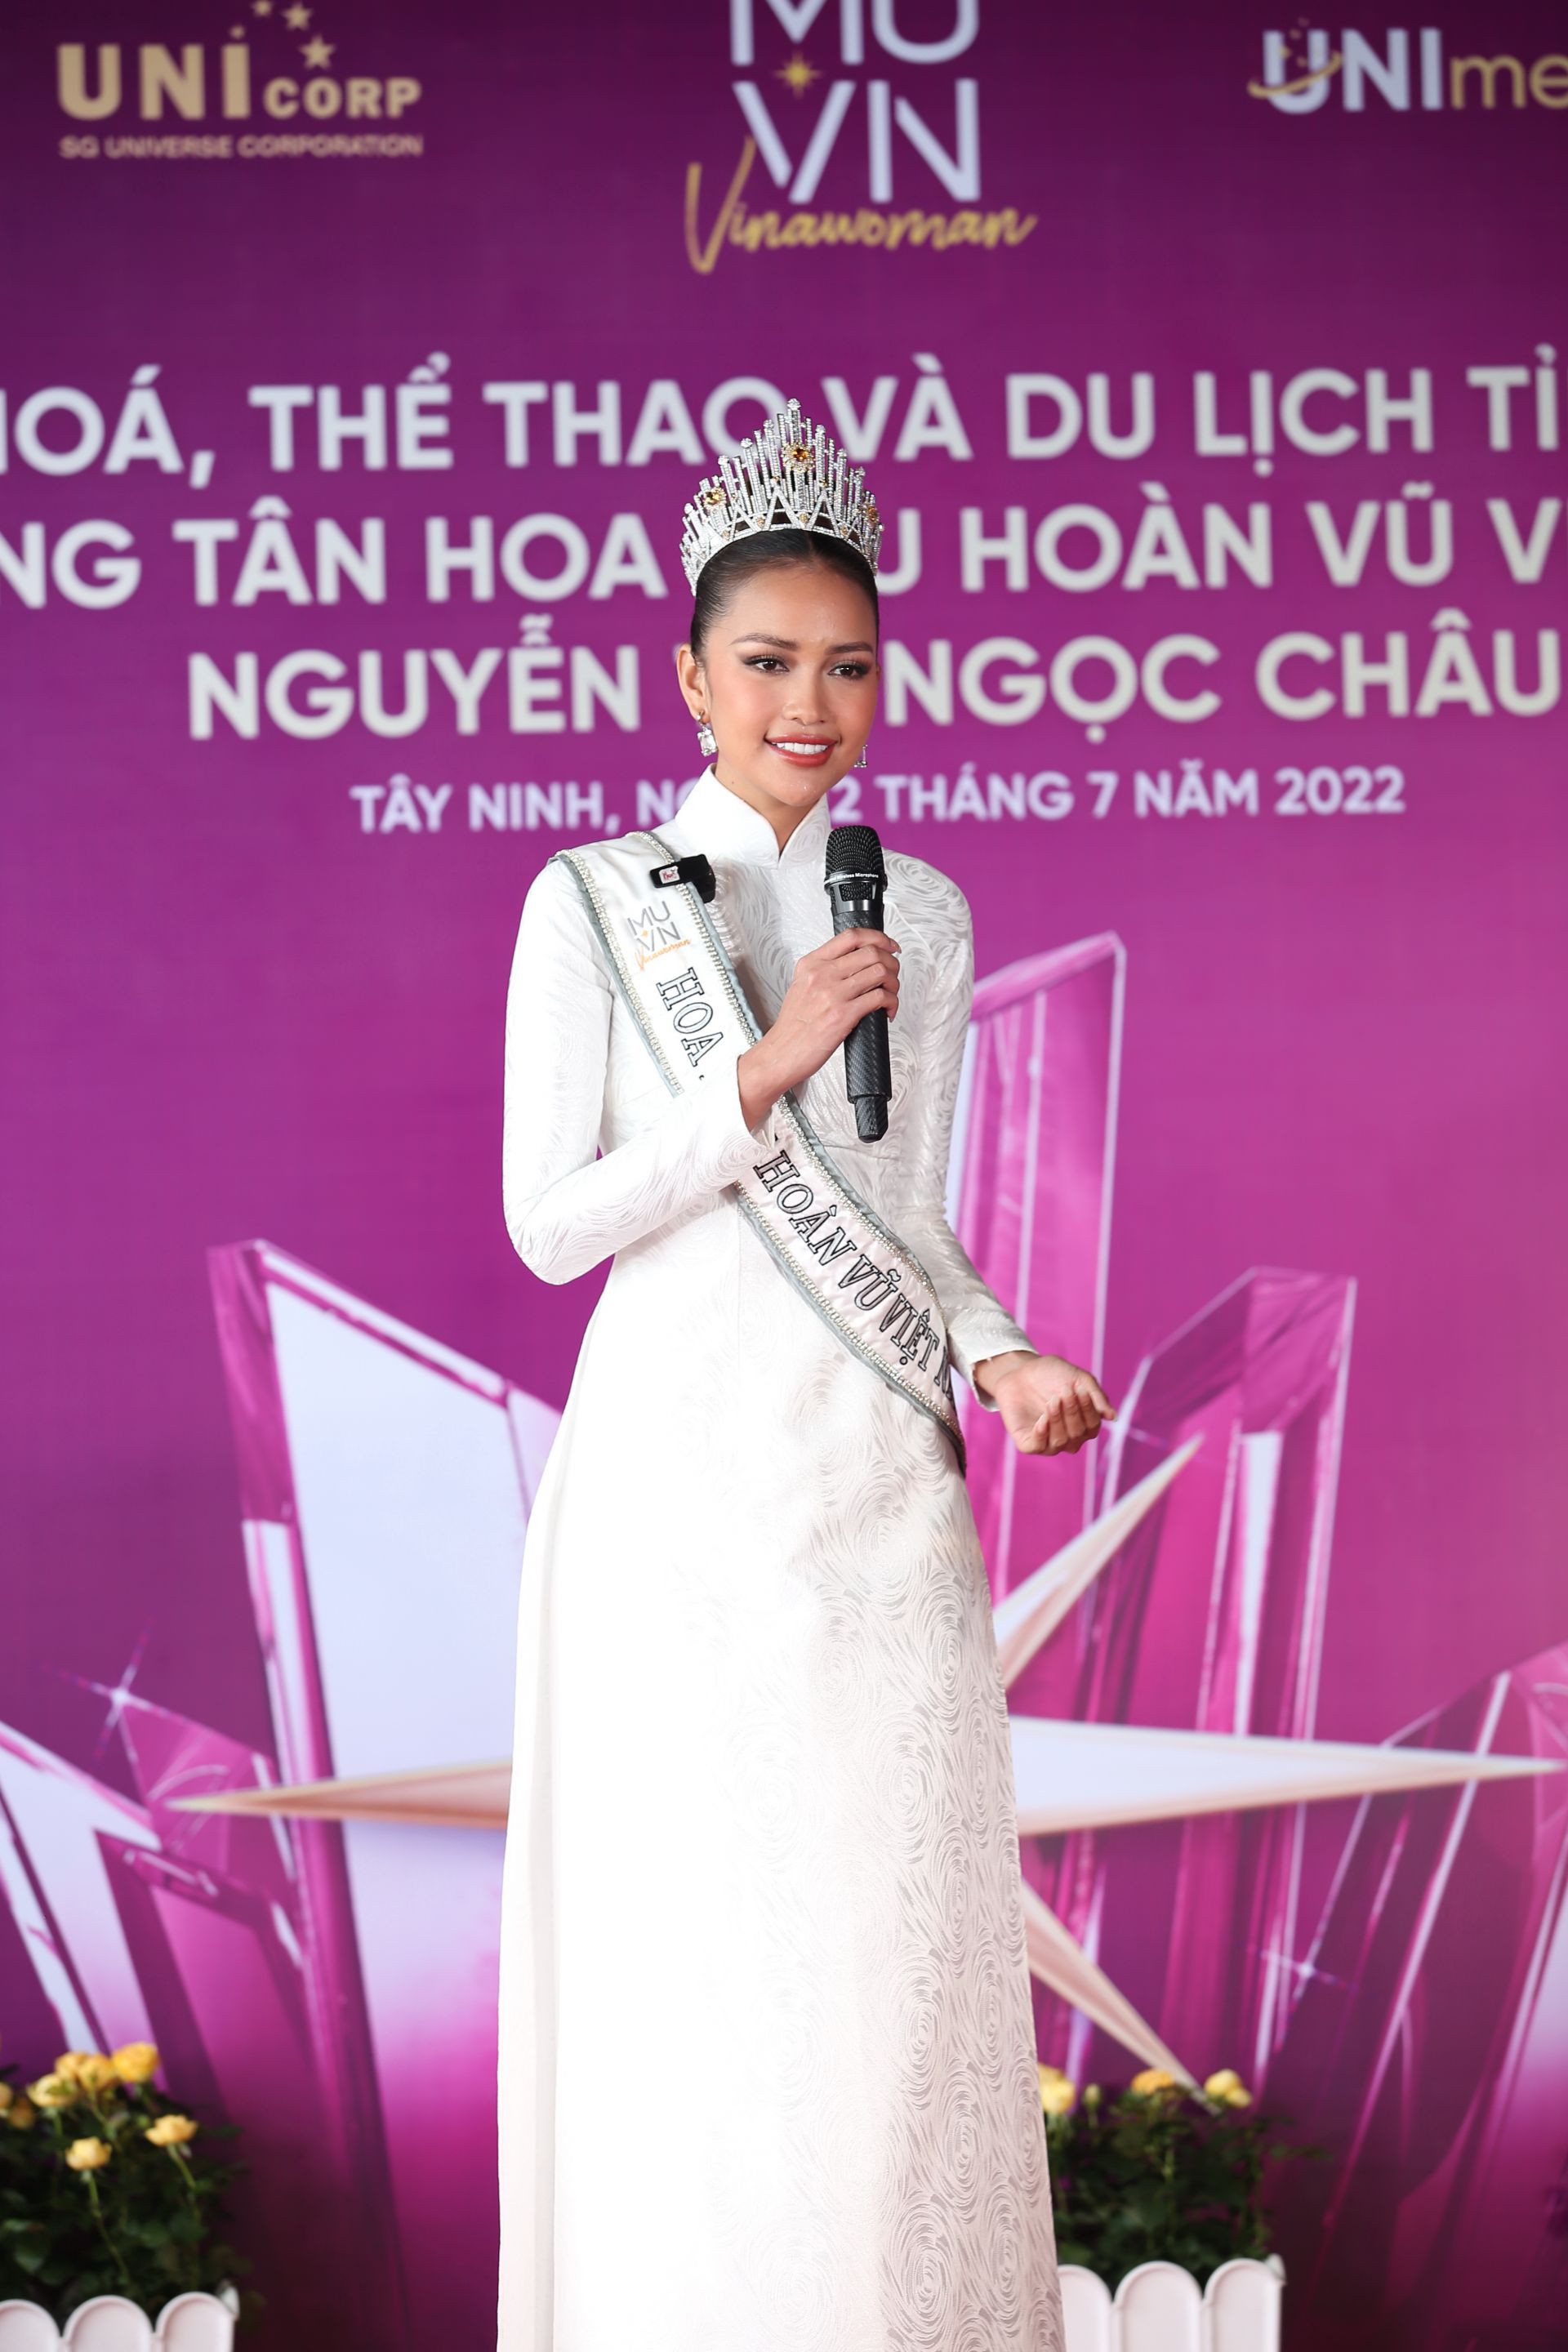 Hoa Hậu Hoàn Vũ Việt Nam 2022-Nguyễn Thị Ngọc Châu về Tây Ninh